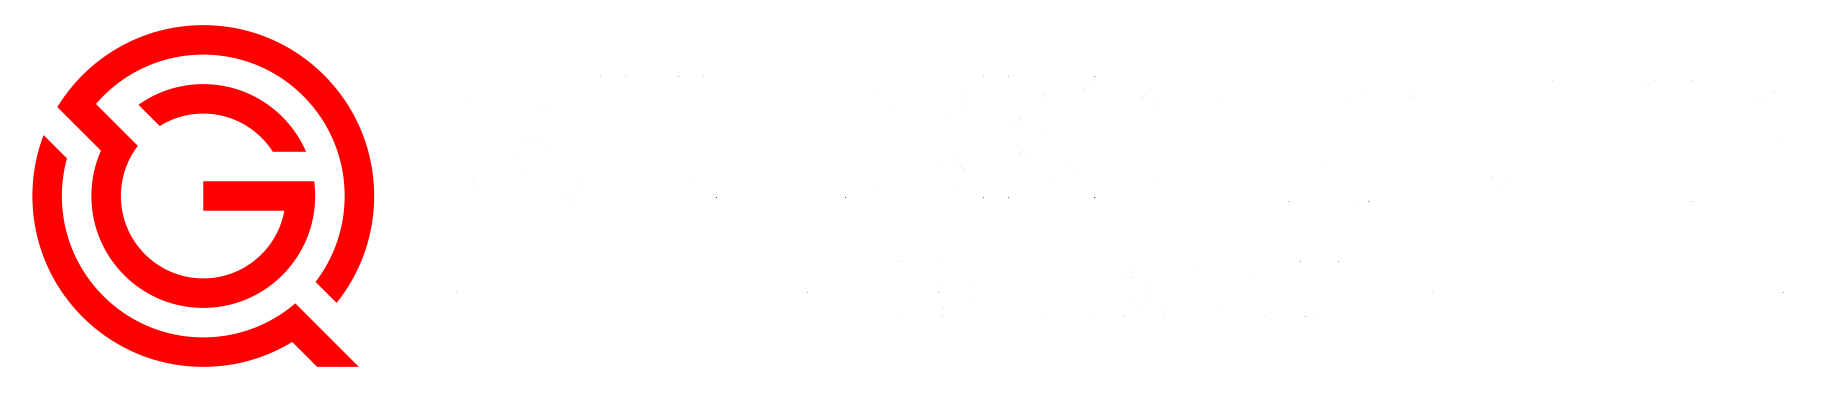 Quack Group Full Logo